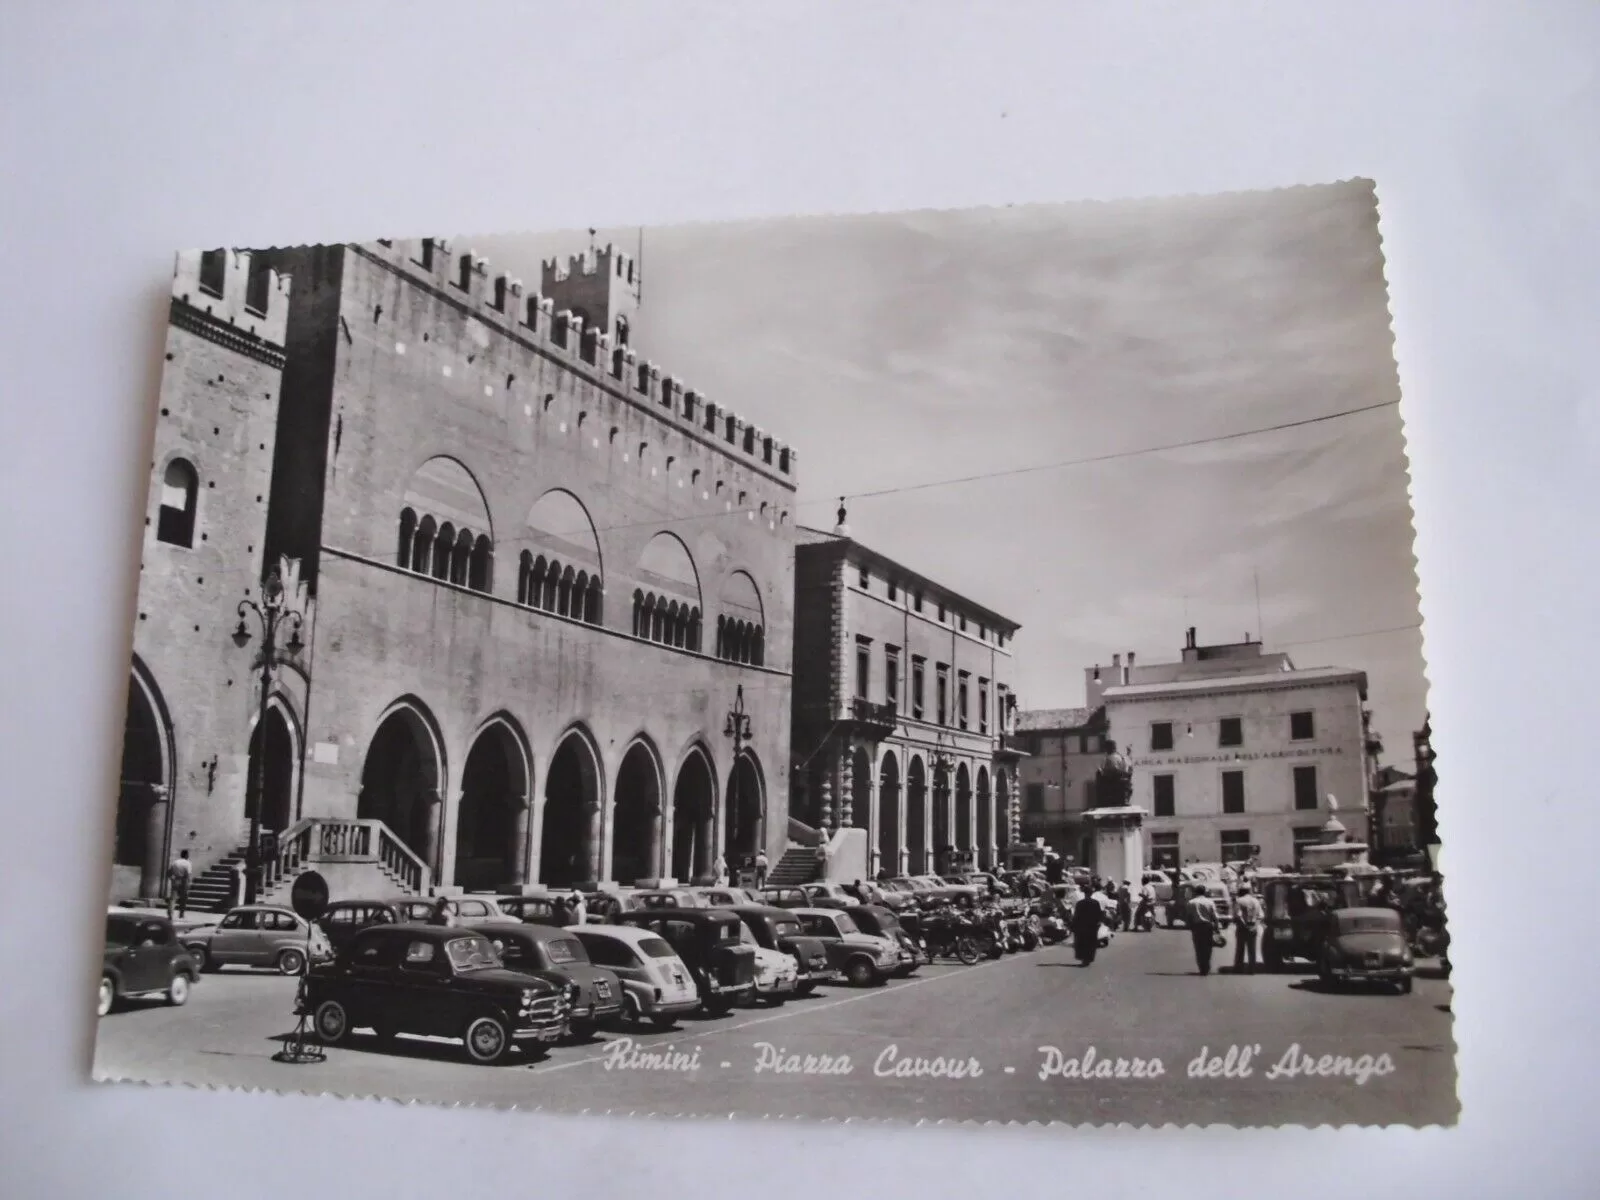 Piazza Cavour in una cartolina nel 1959; dietro le auto parcheggiate si scorge l'edicola all'angolo di Corso d'Augusto